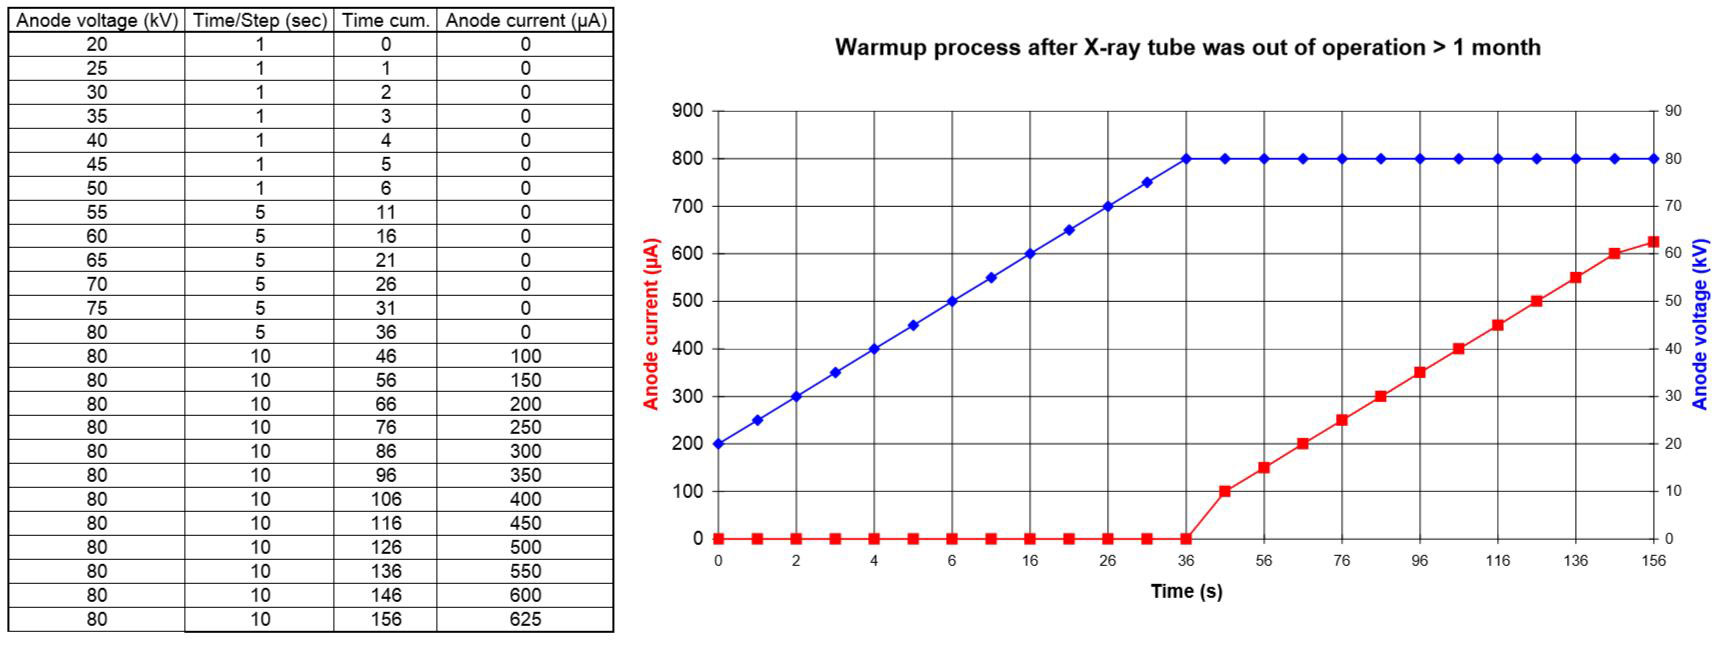 WarmUp Prozesse für 80kV Röntgenquellen außer Betrieb > 1 Monat